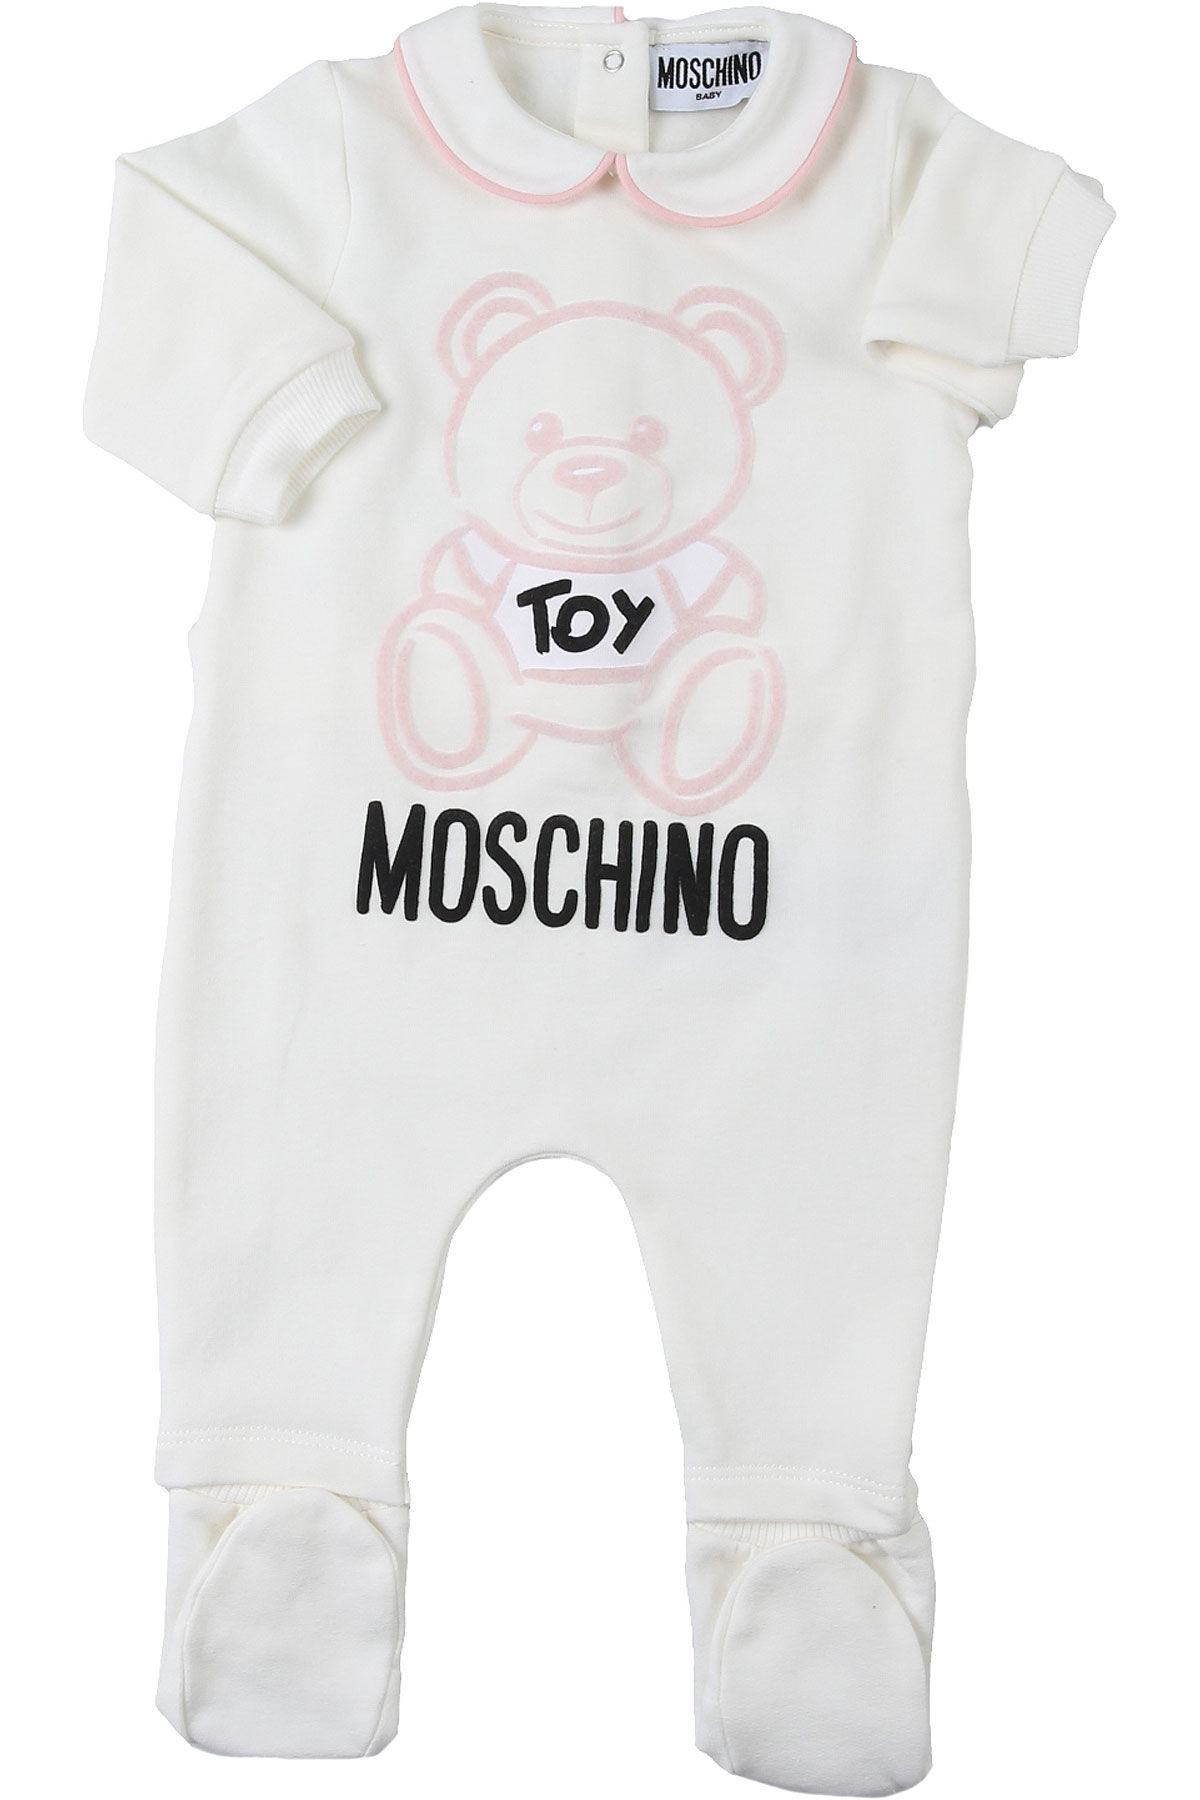 Moschino Baby Body & Strampelanzug für Mädchen Günstig im Sale, Weiss, Baumwolle, 2017, 3M 6M 9M